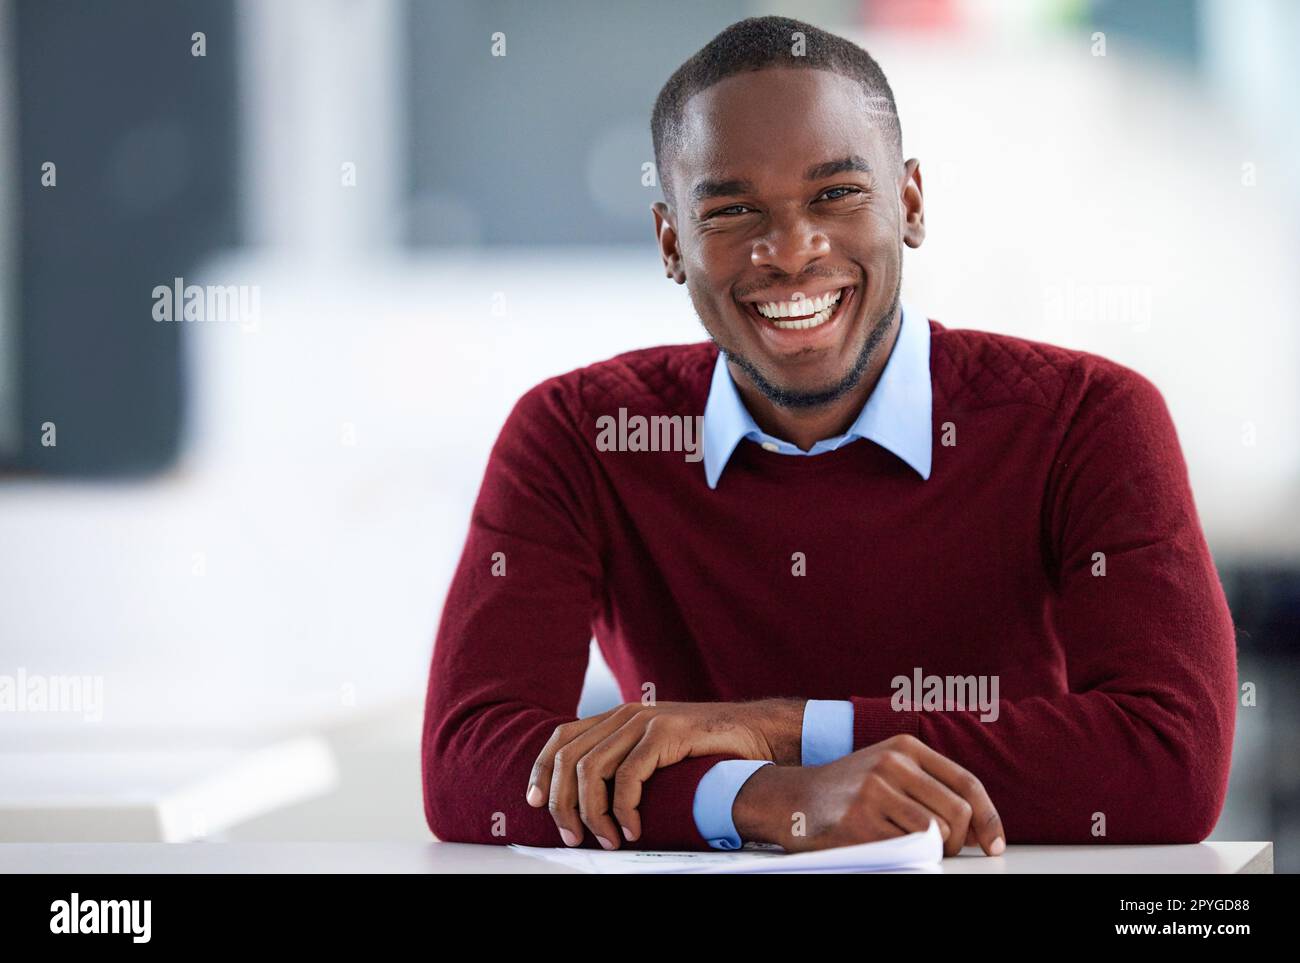 Meine Karriere ist im Trend. Porträt eines lächelnden jungen Geschäftsmannes, der an einem Schreibtisch in einem Büro sitzt. Stockfoto